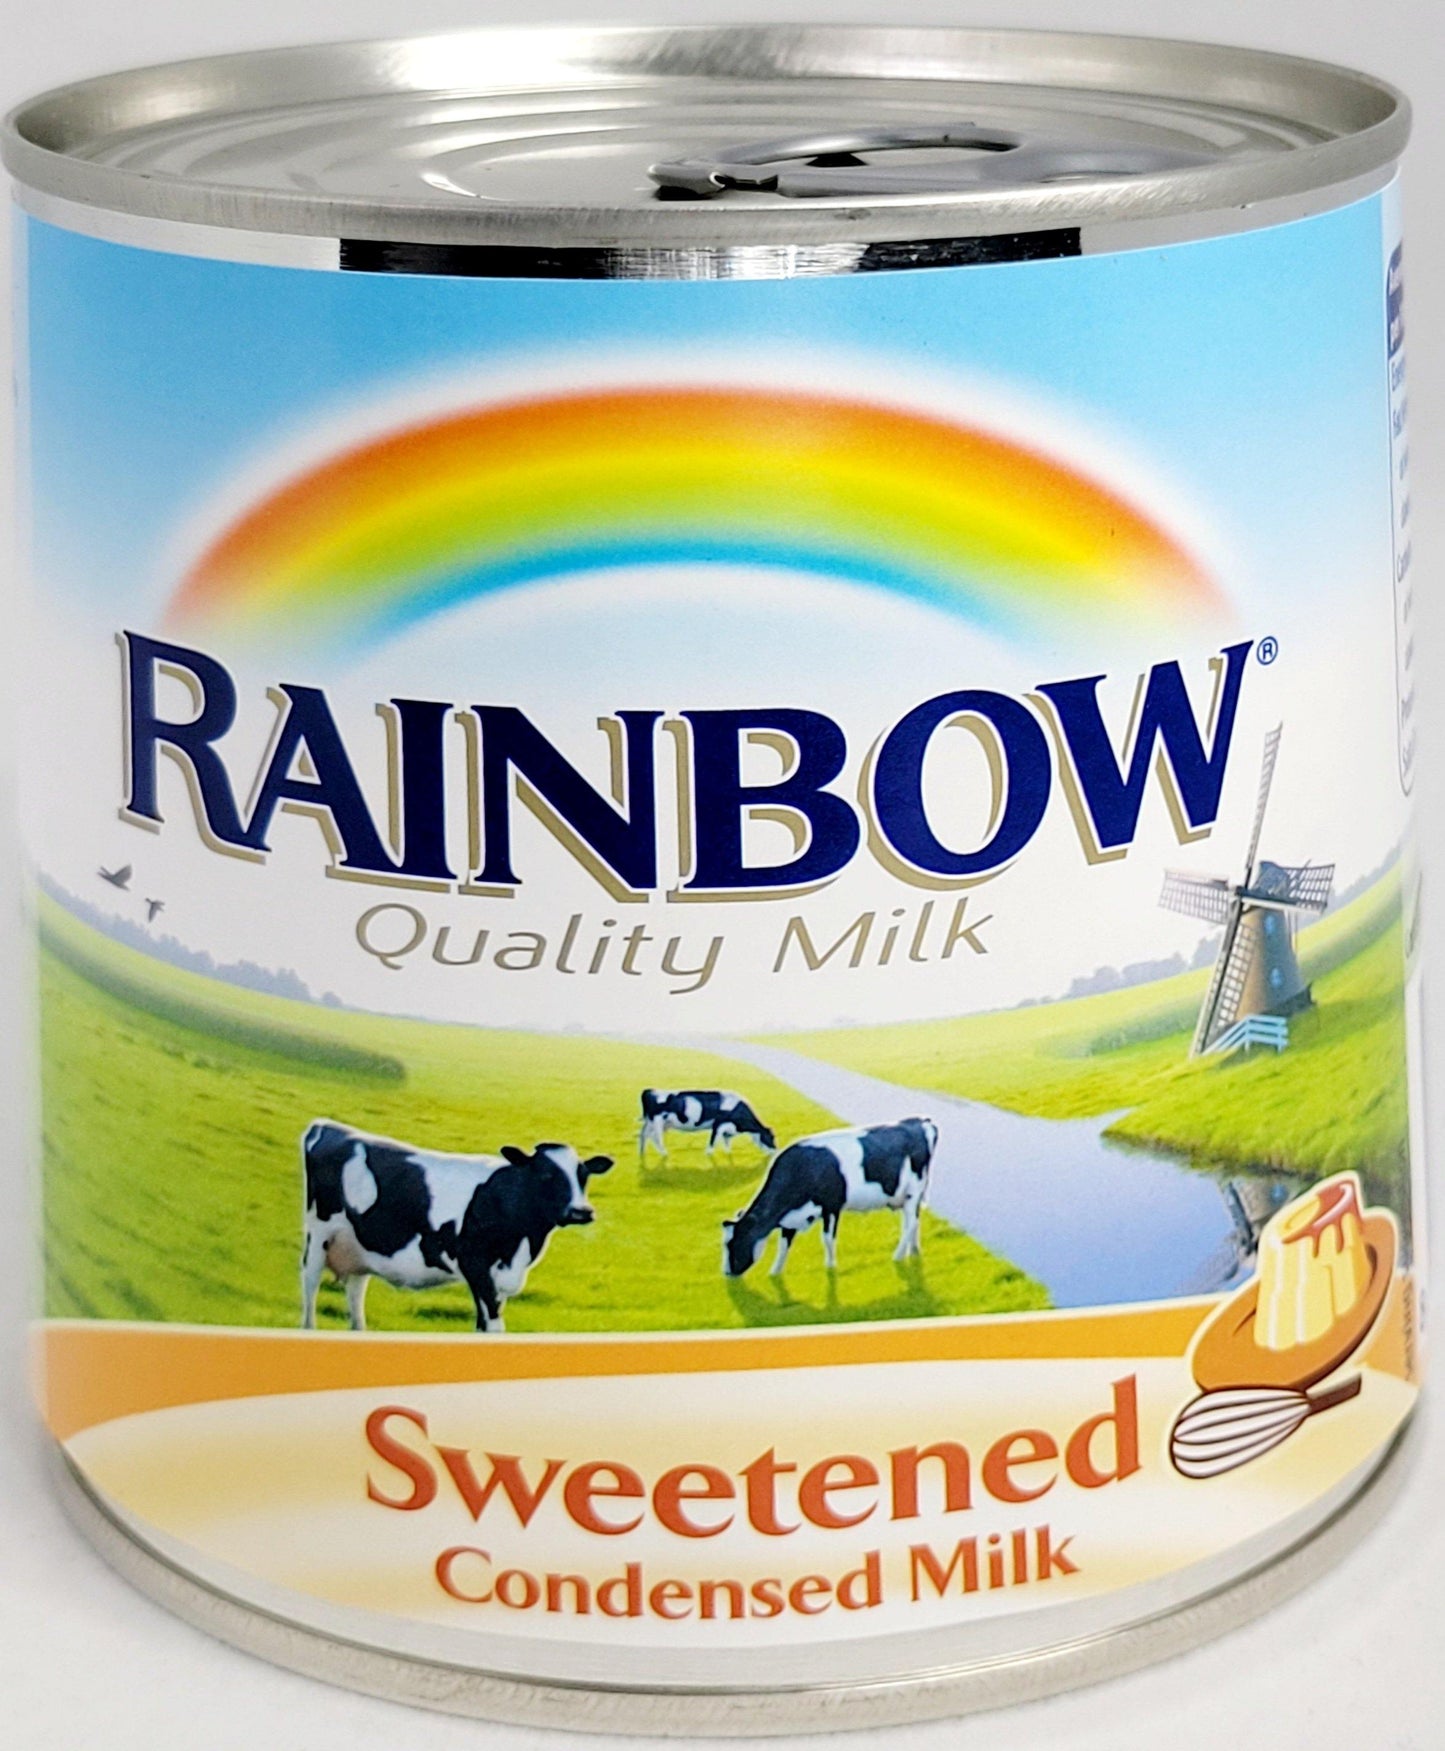 Rainbow Condensed Milk sweetened - Arabian Shopping Zone